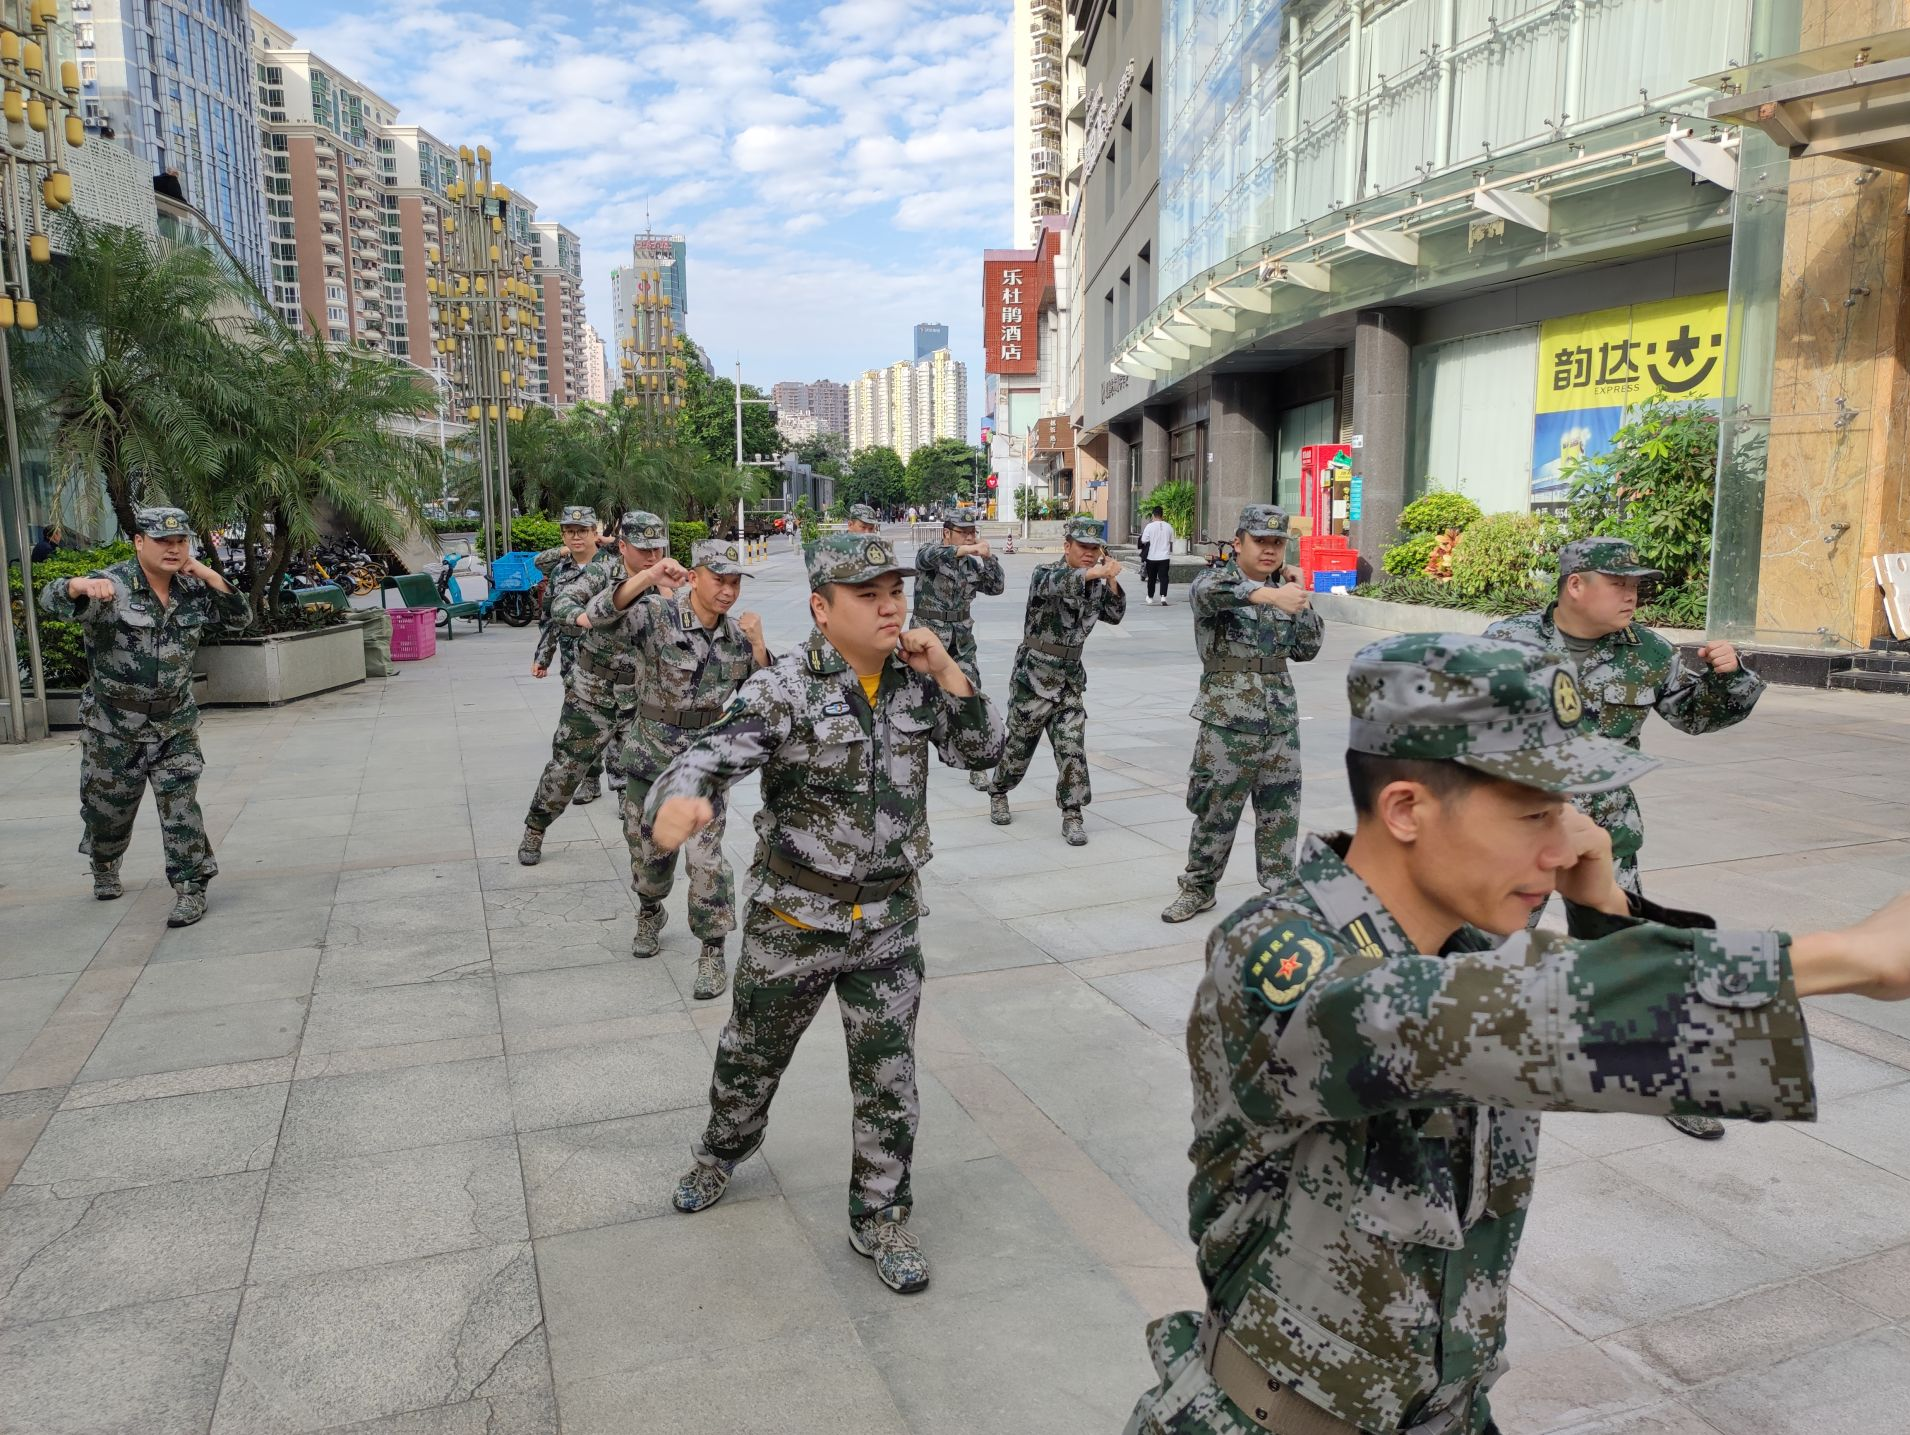 粤海街道经济发展和国防教育相得益彰  